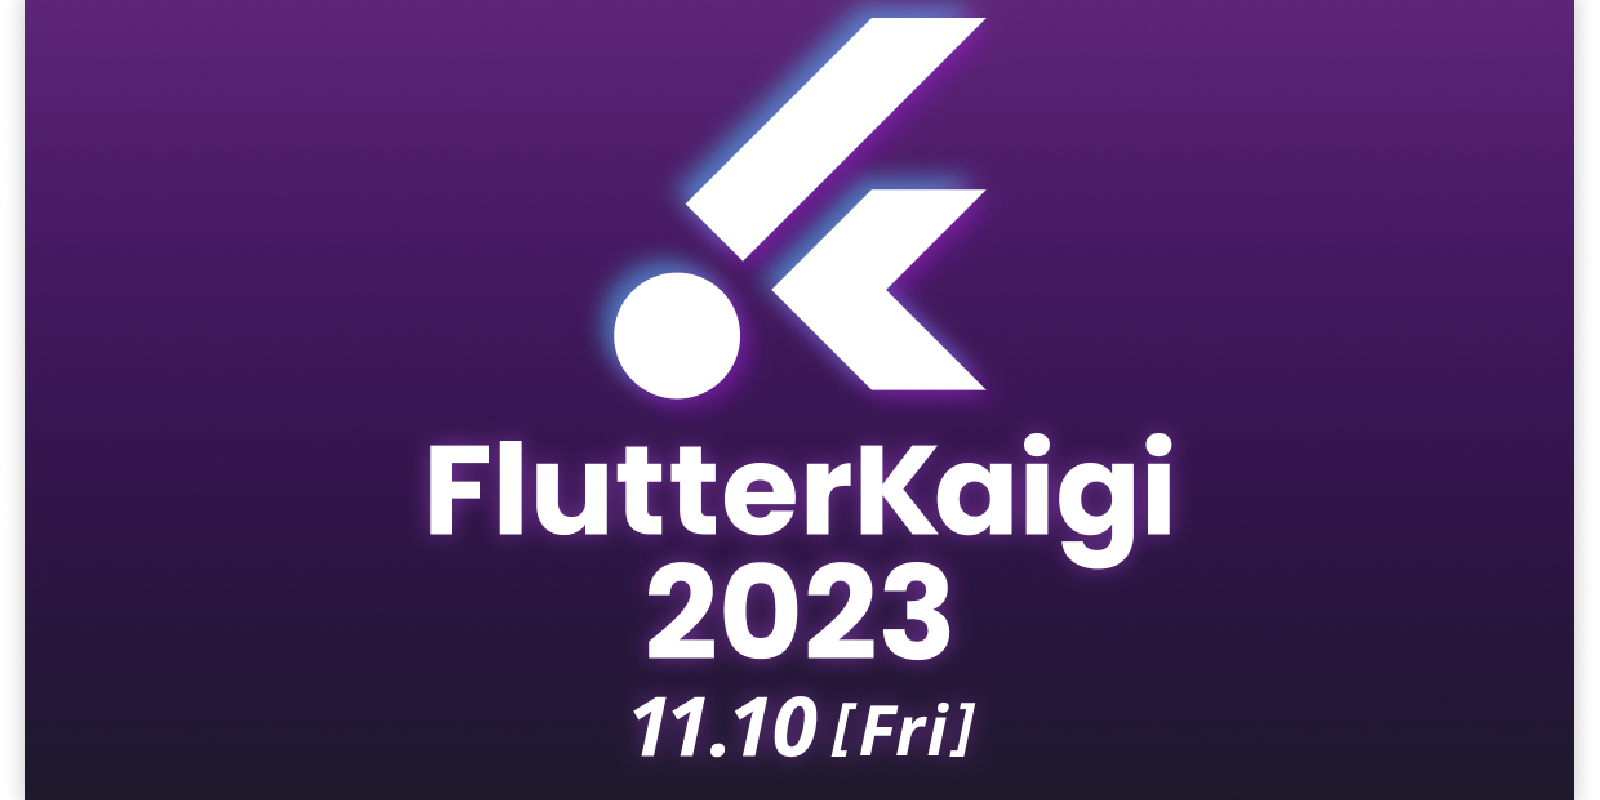 FlutterKaigi 2023 banner